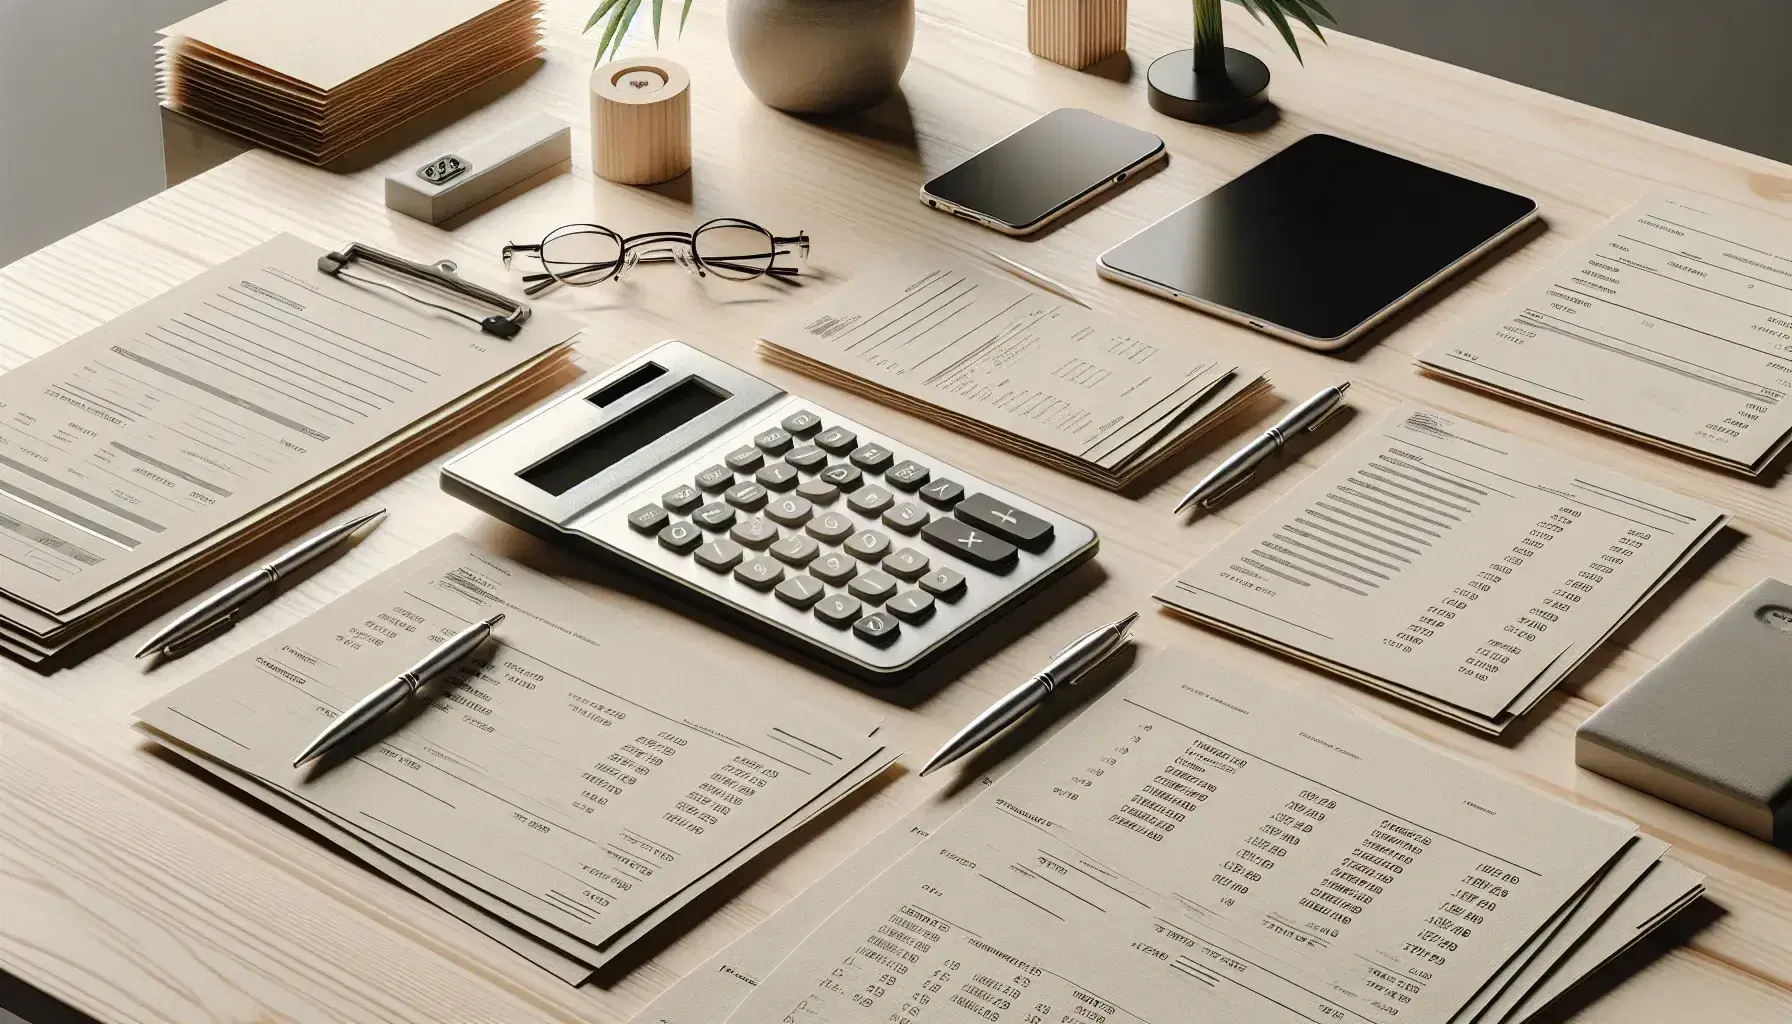 Escritorio de oficina de madera clara con documentos de negocios, calculadora negra, gafas metálicas, bolígrafo plateado y smartphone apagado, junto a planta verde en maceta blanca.